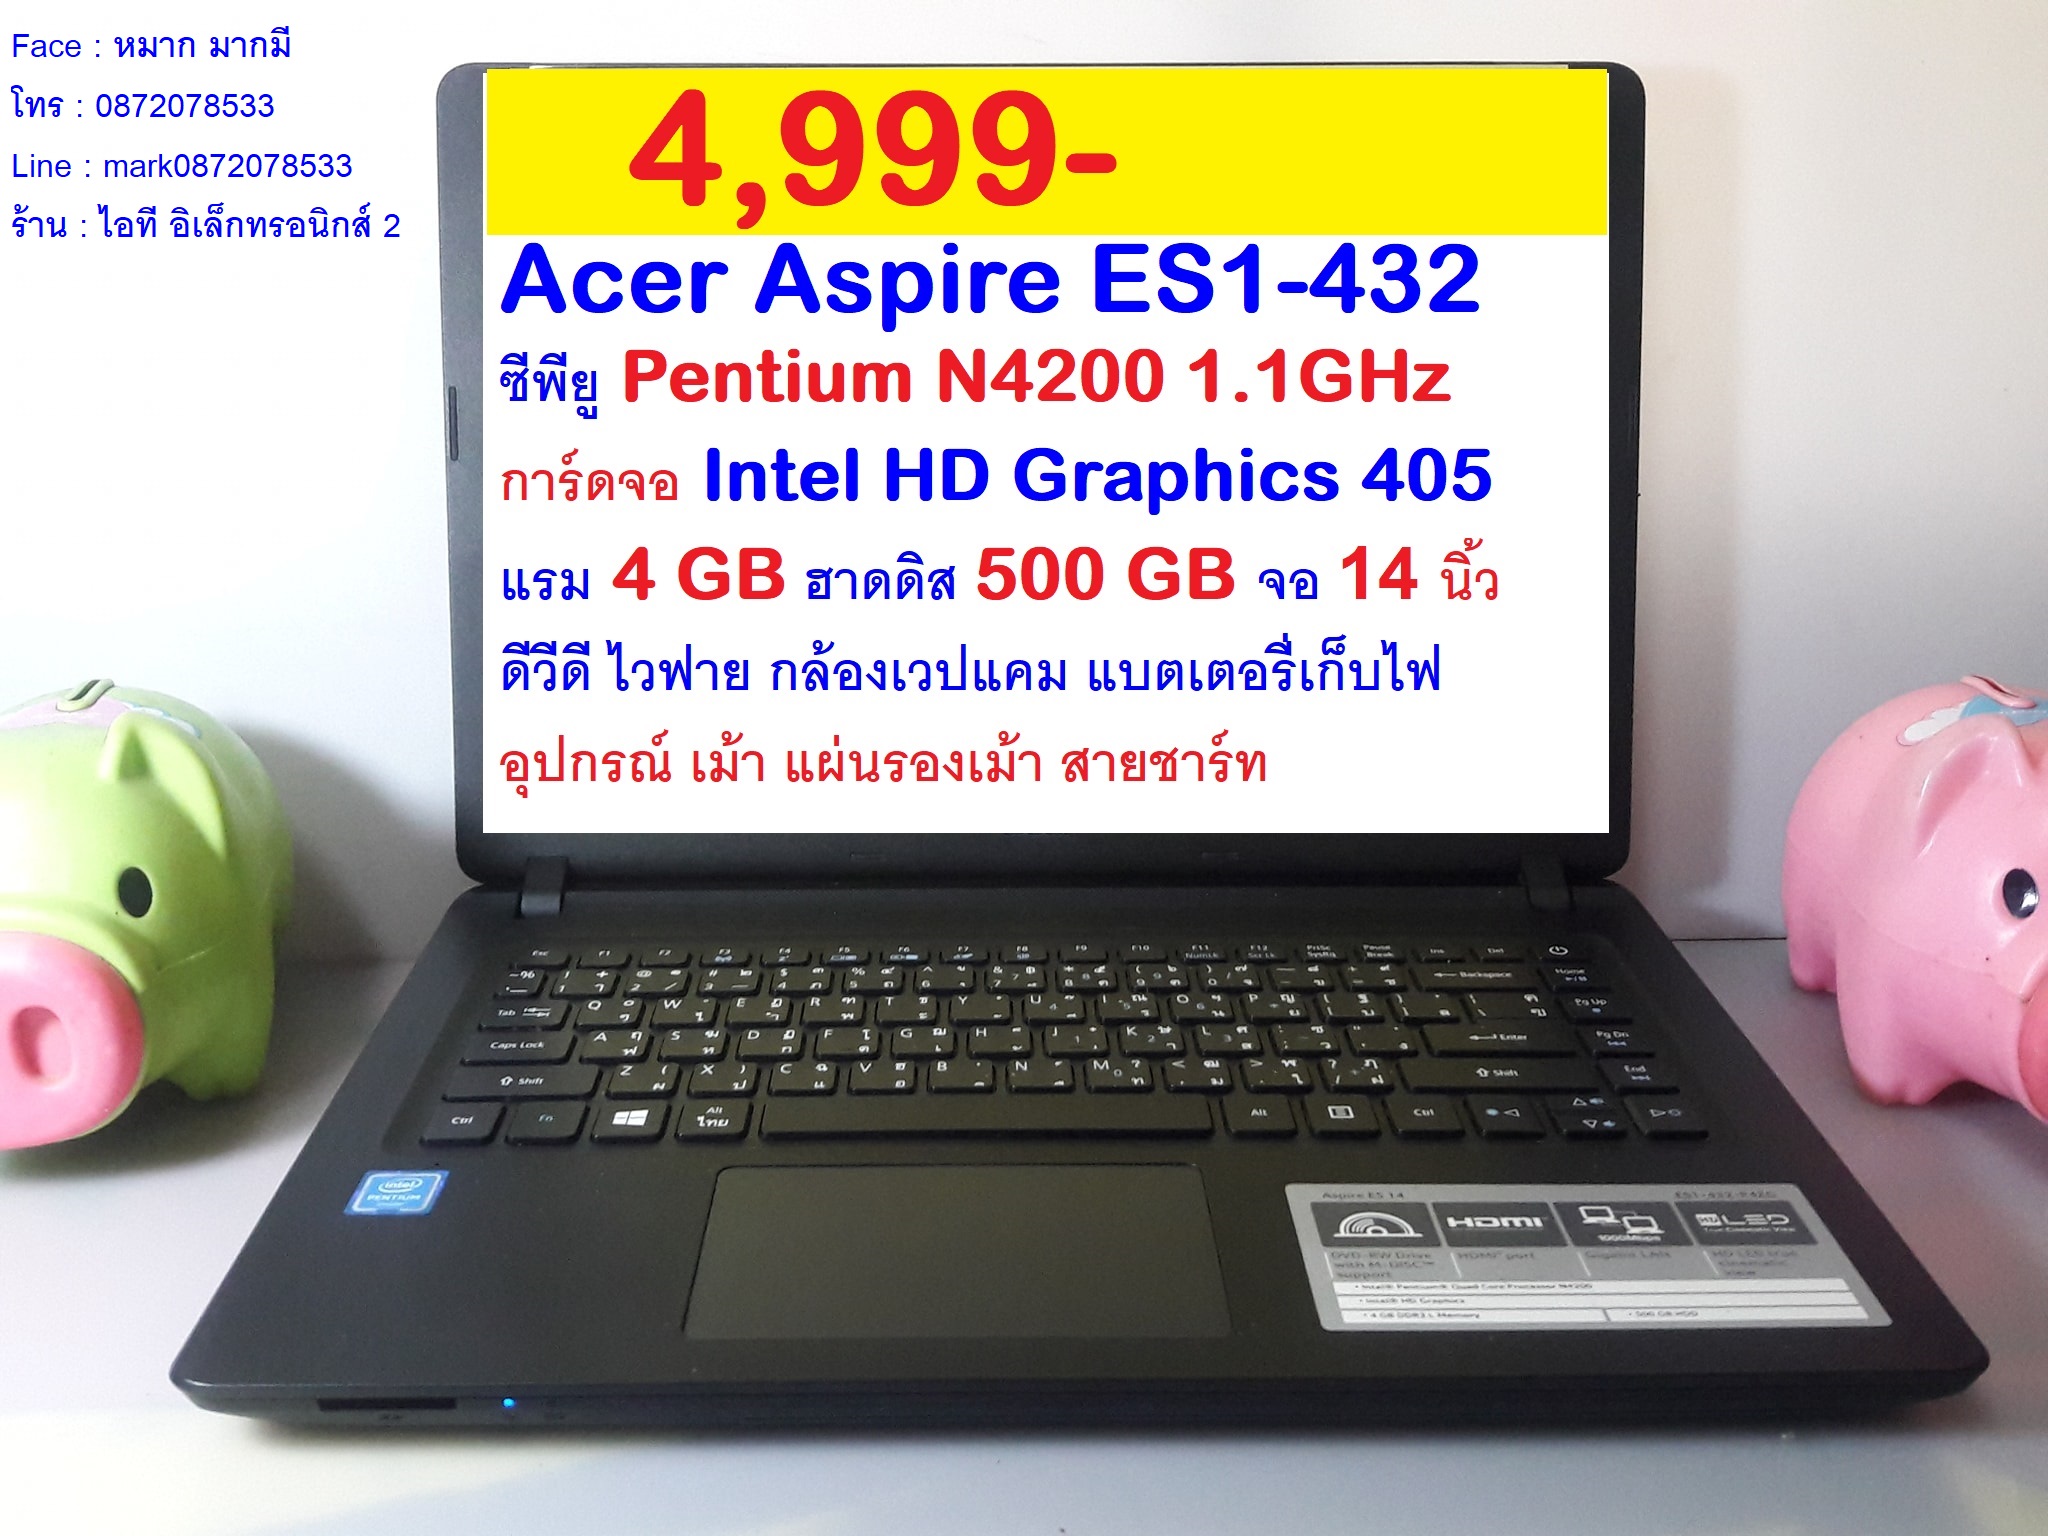 Acer Aspire ES1-432 ราคา 4,999 บาท รูปที่ 1